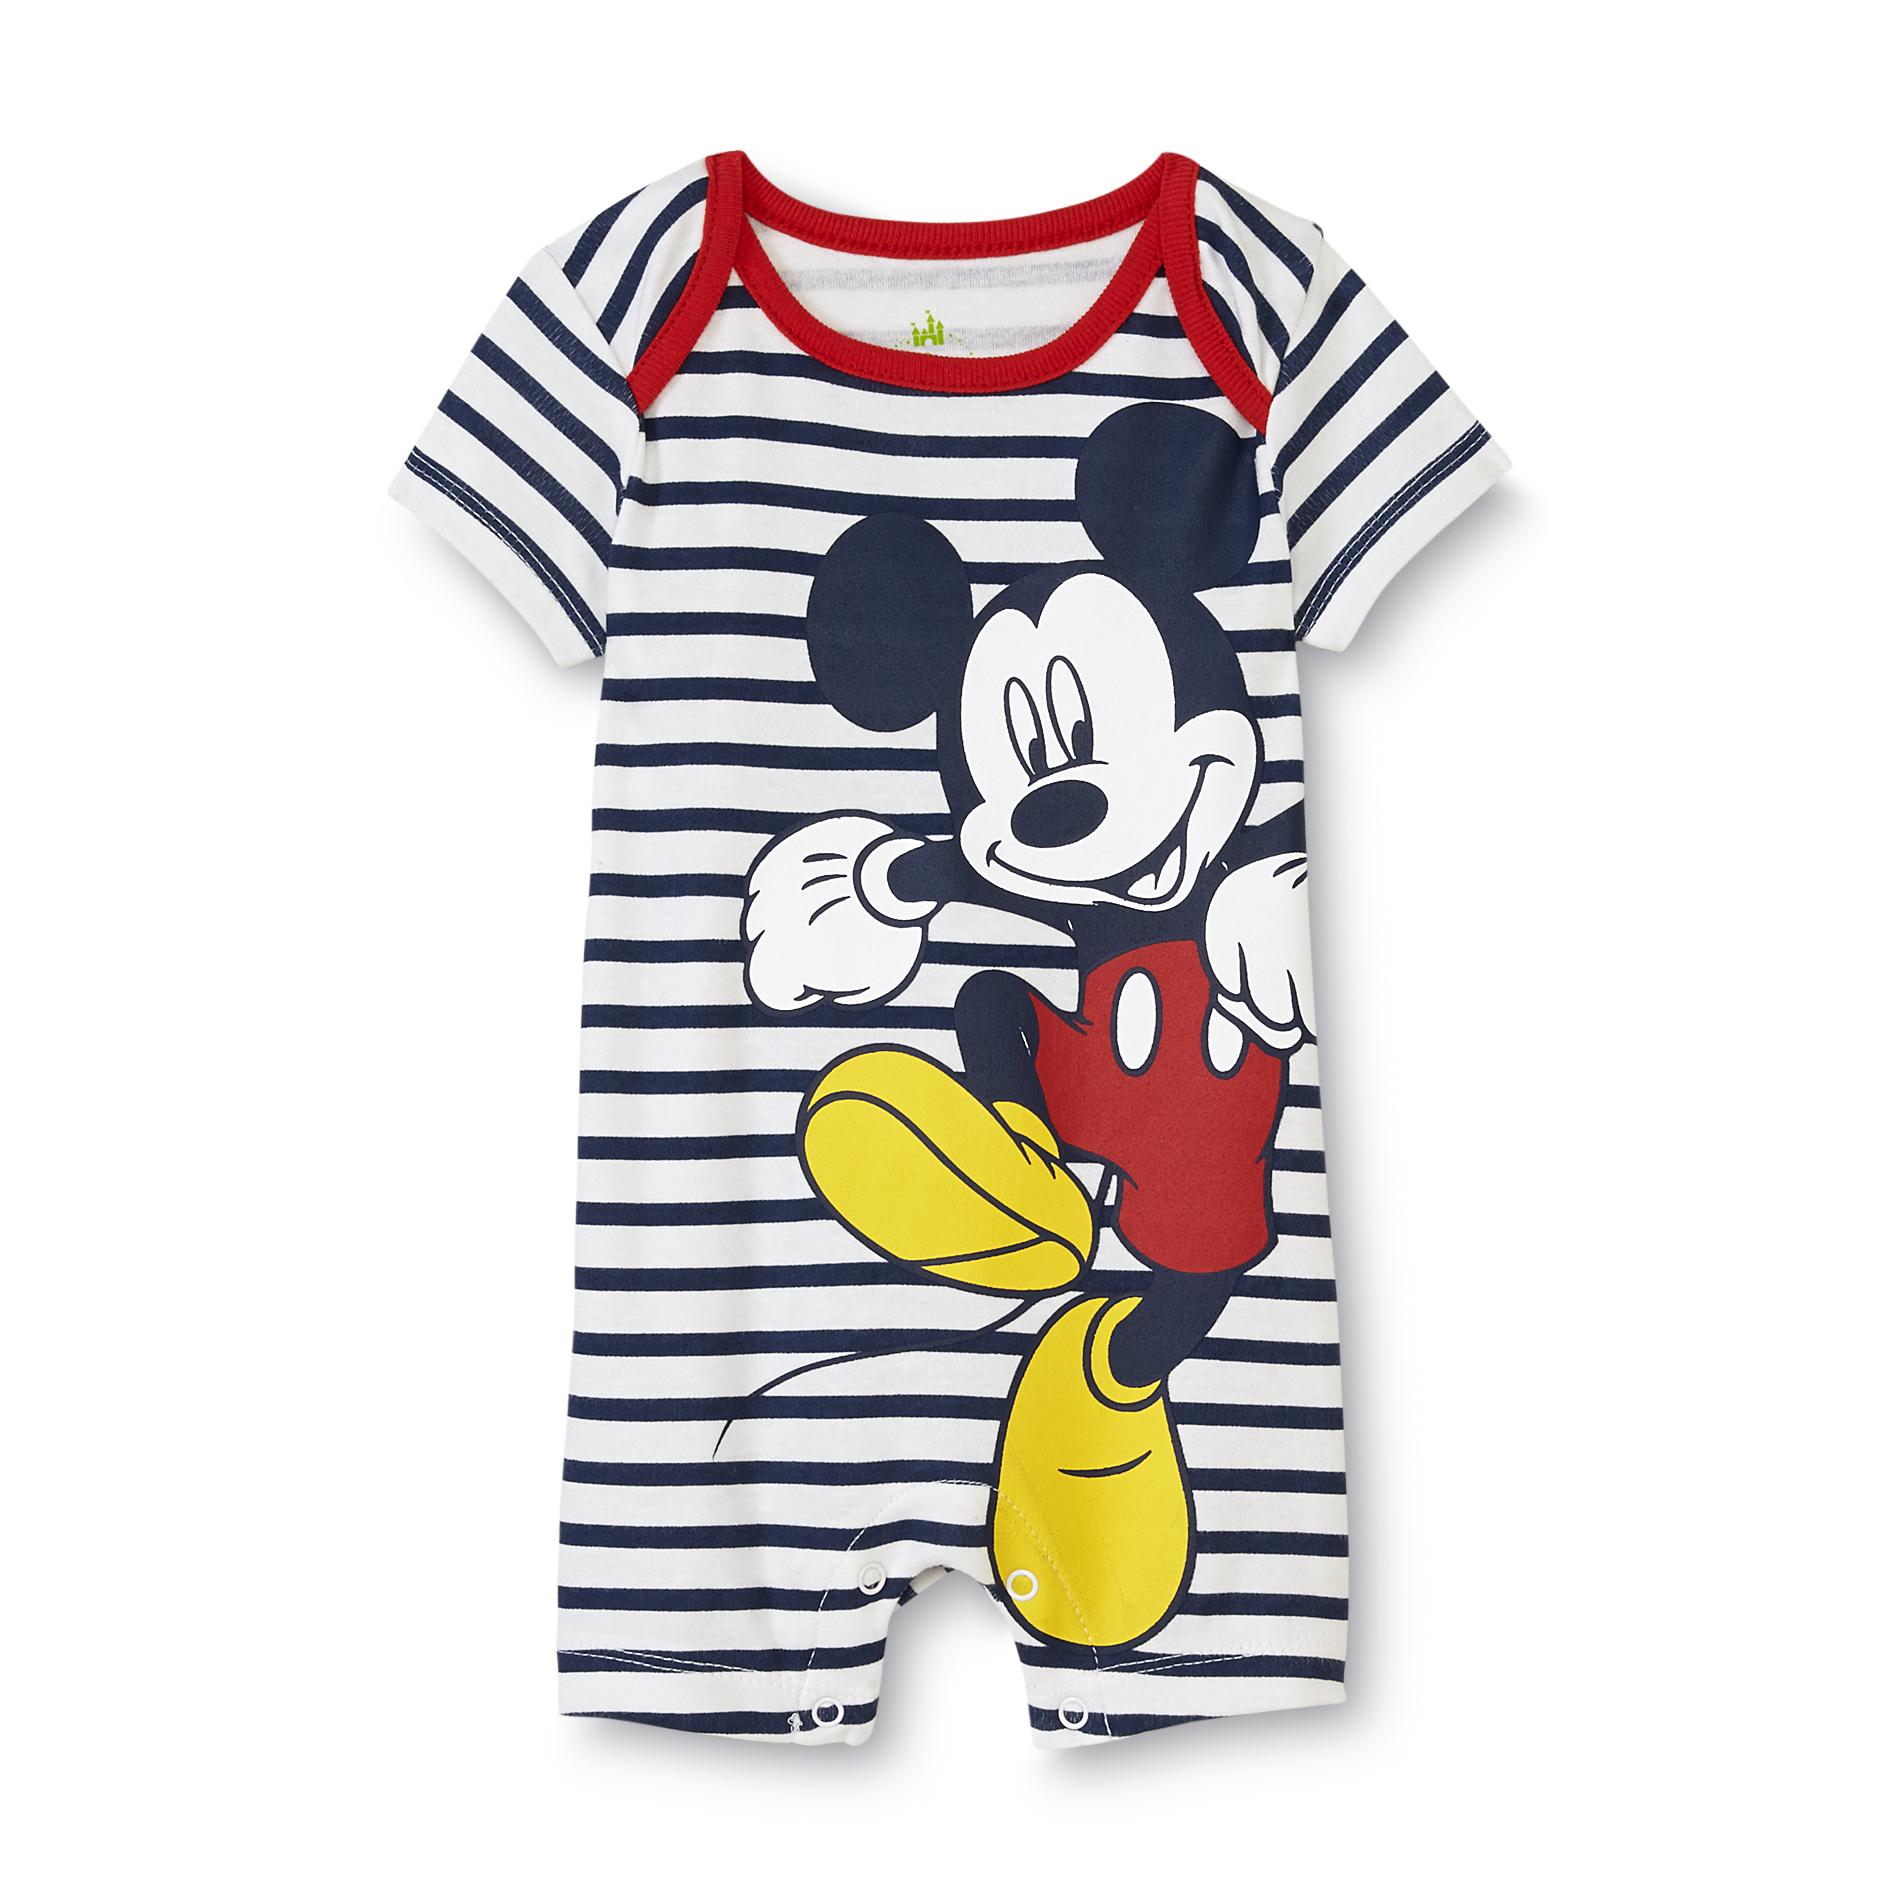 Disney Mickey Mouse Newborn Boy's Graphic Romper - Striped